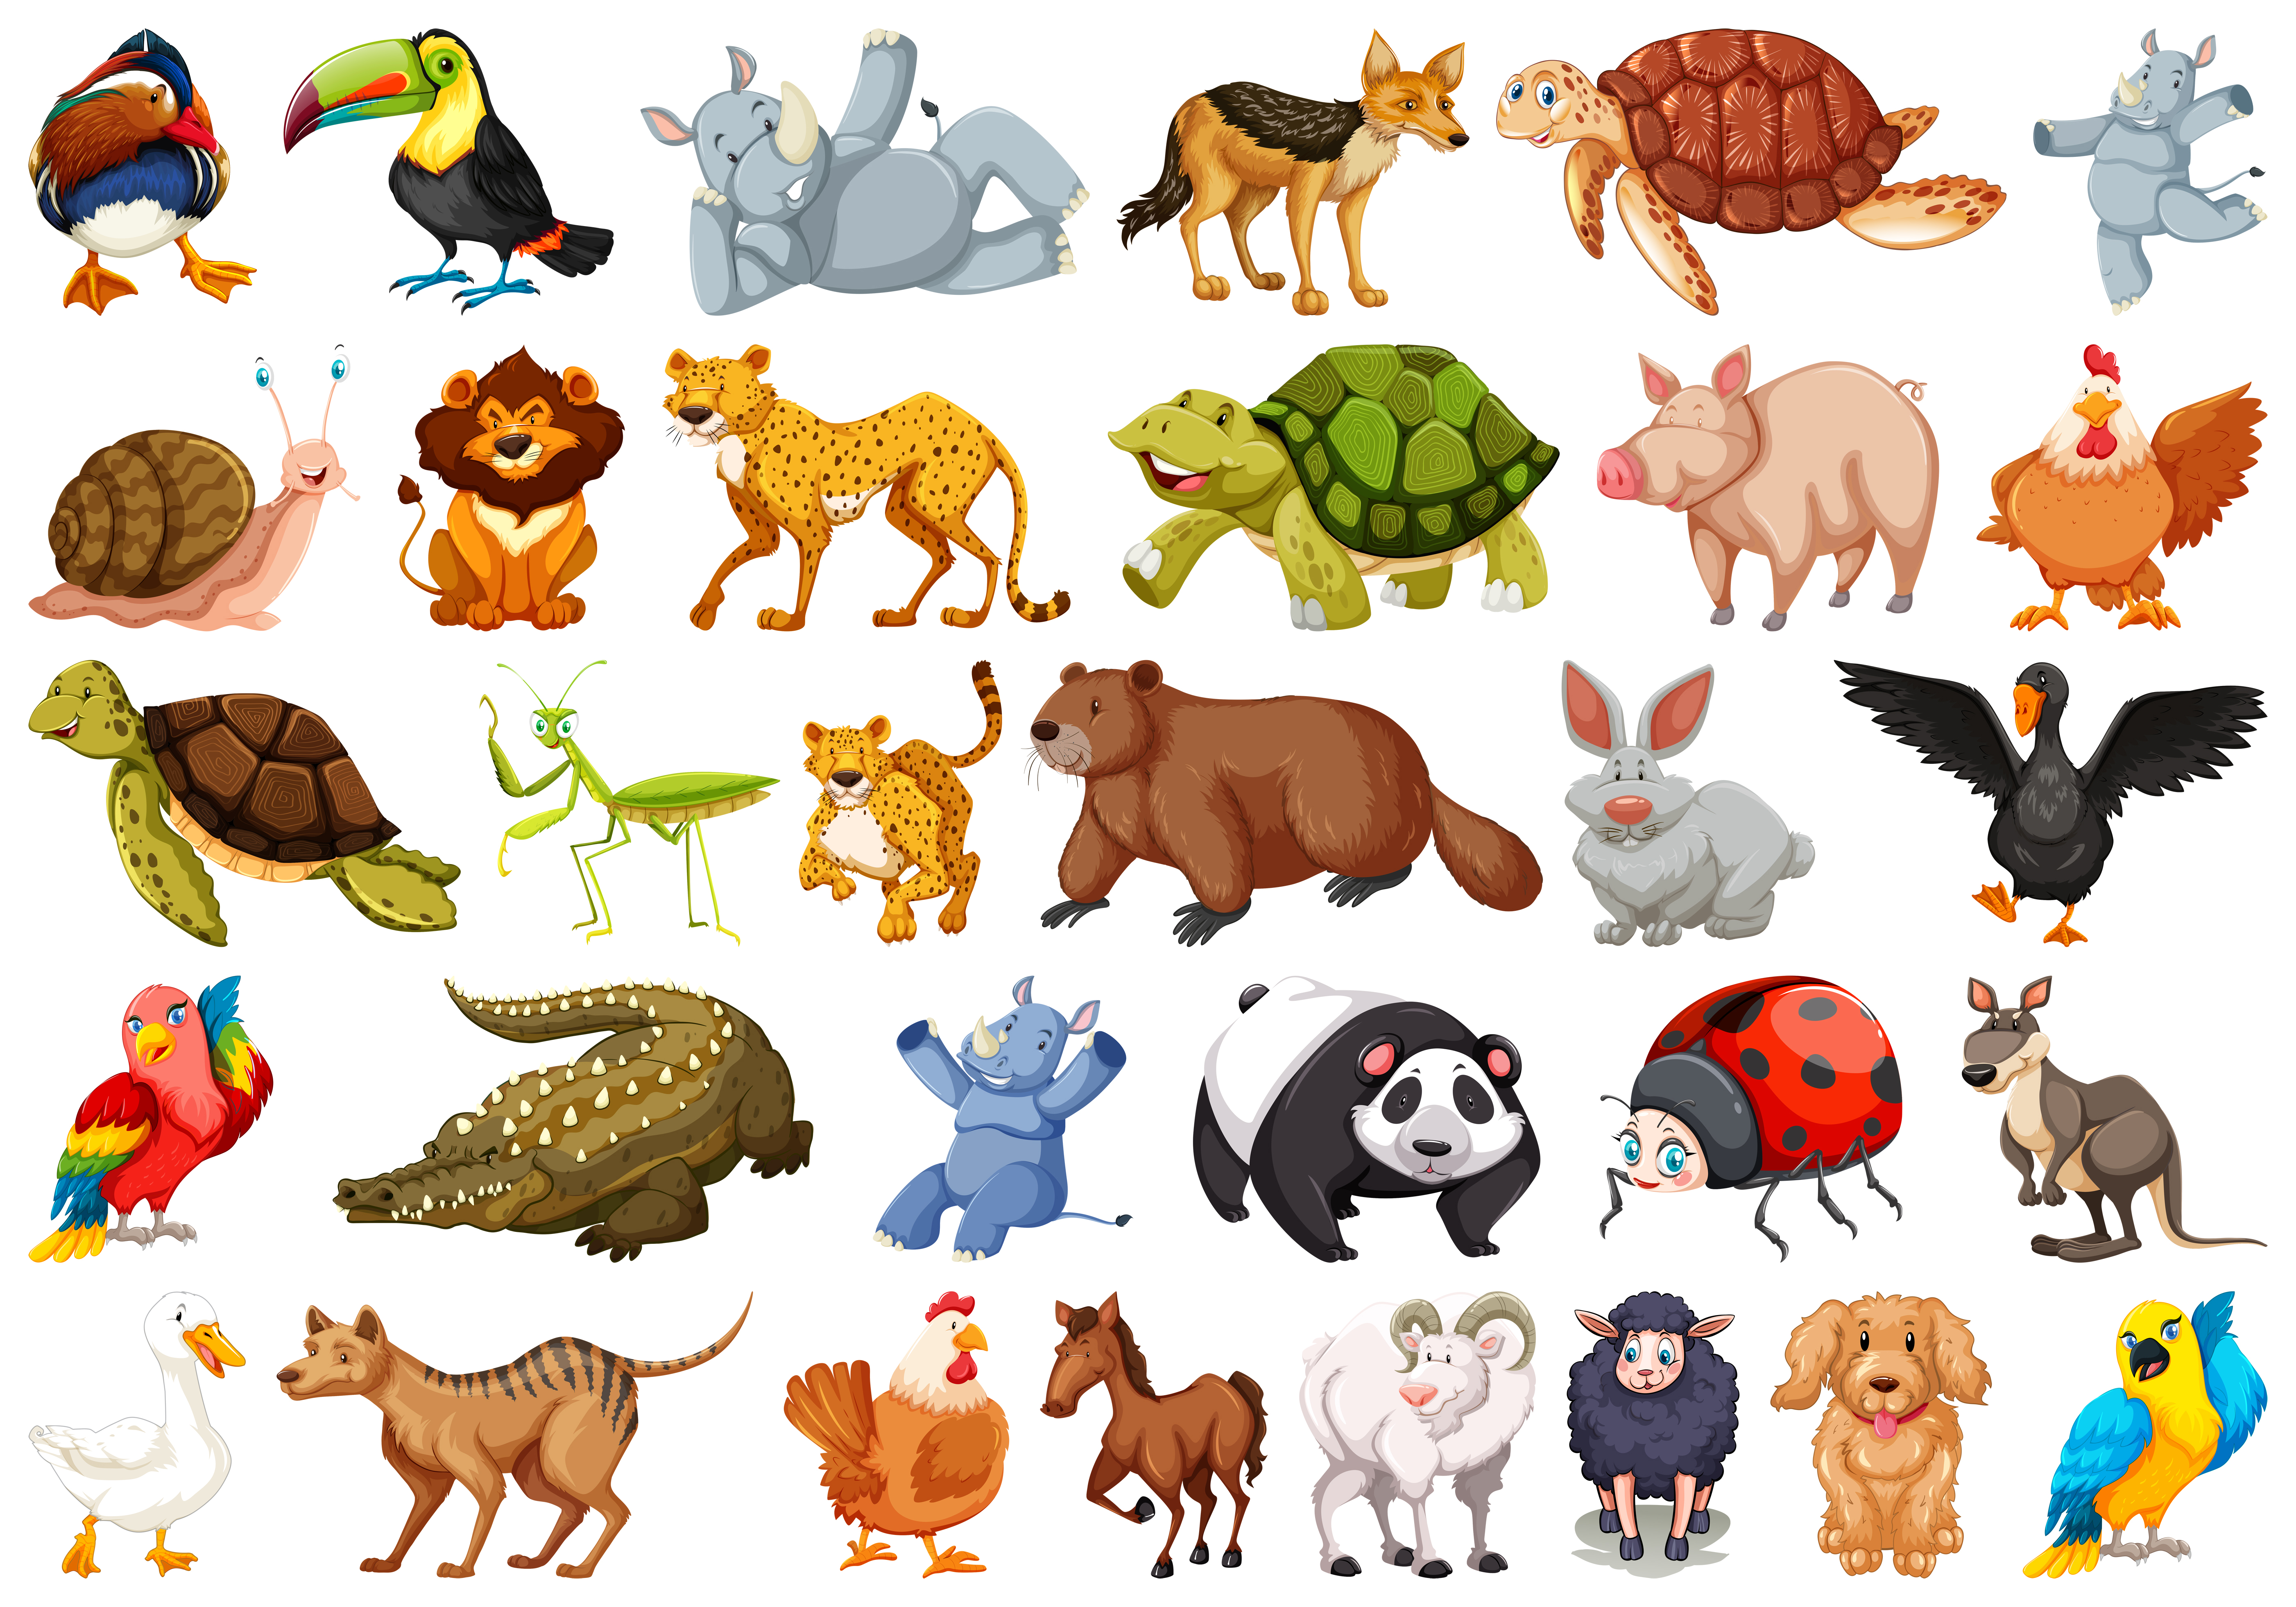 Животные с озвучкой для детей. Мультяшные животные для детей. Иллюстрации животных для детей. Мультяшные животные в одном стиле. Много животных на одной картинке.